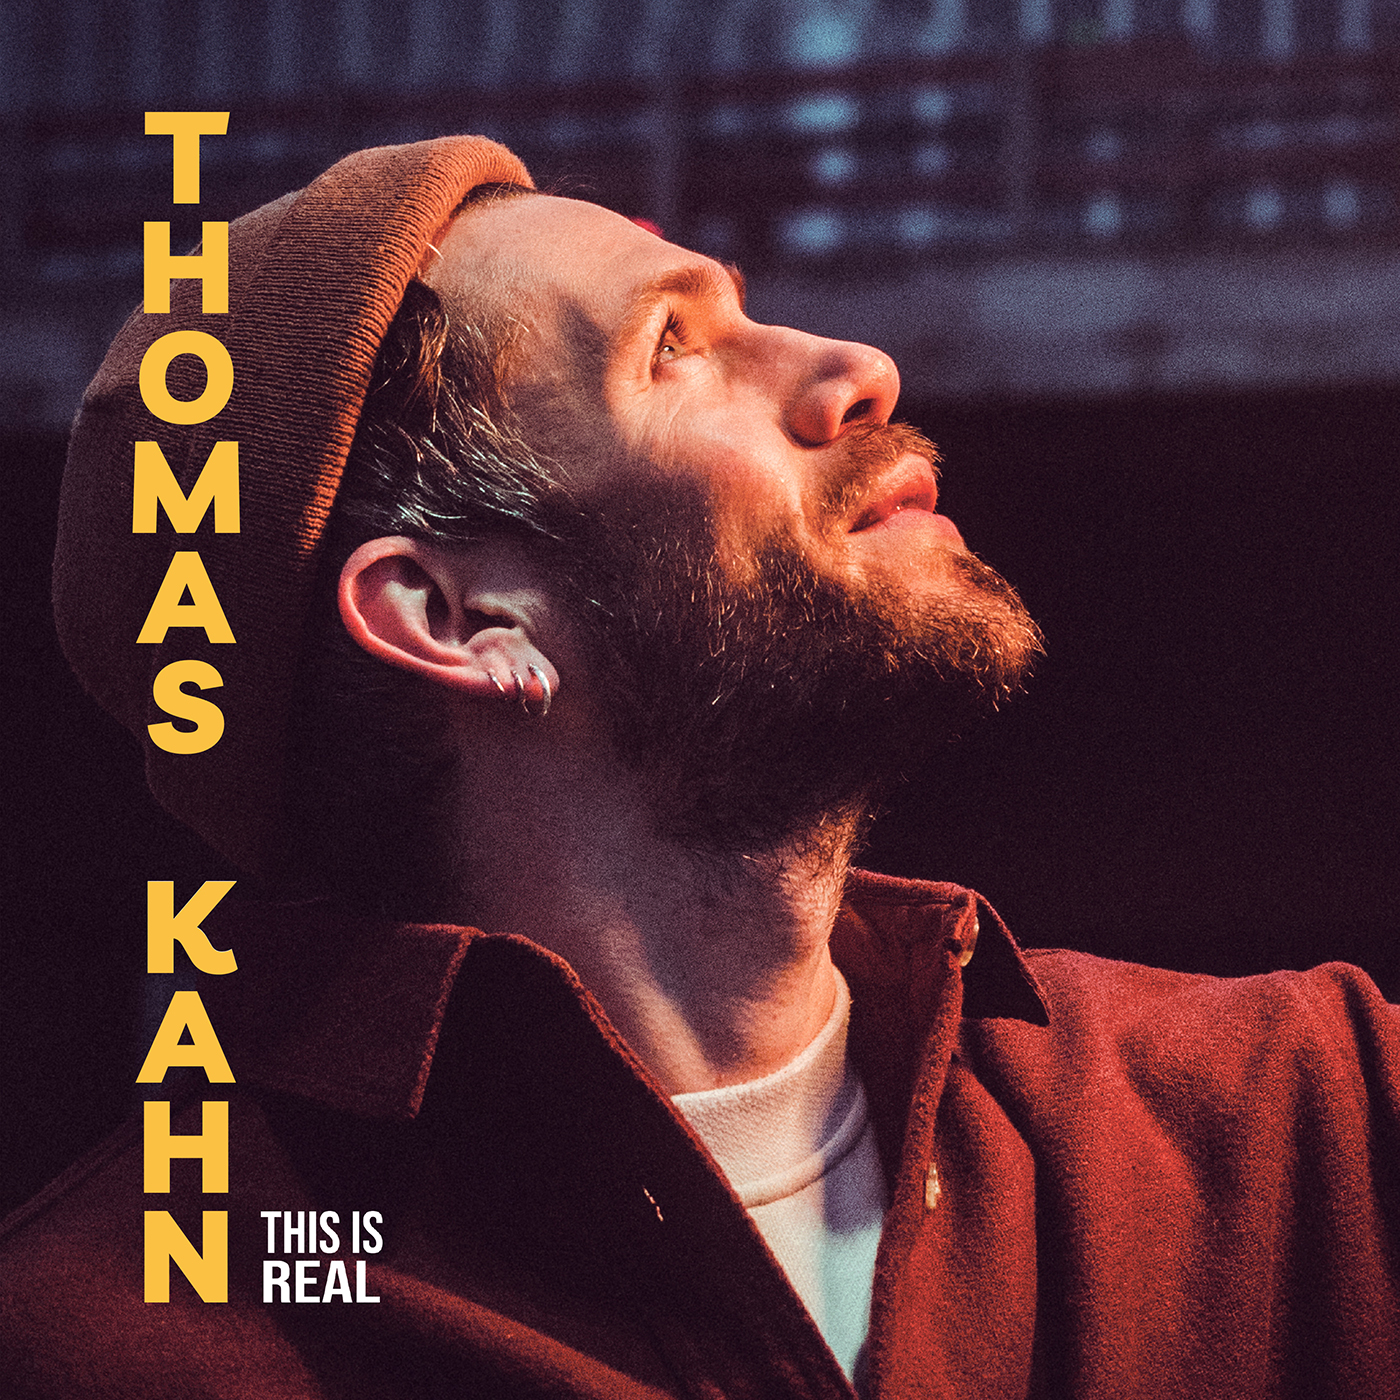 Thomas Kahn dévoile Don't Look at me, extrait de l'album This Is Real